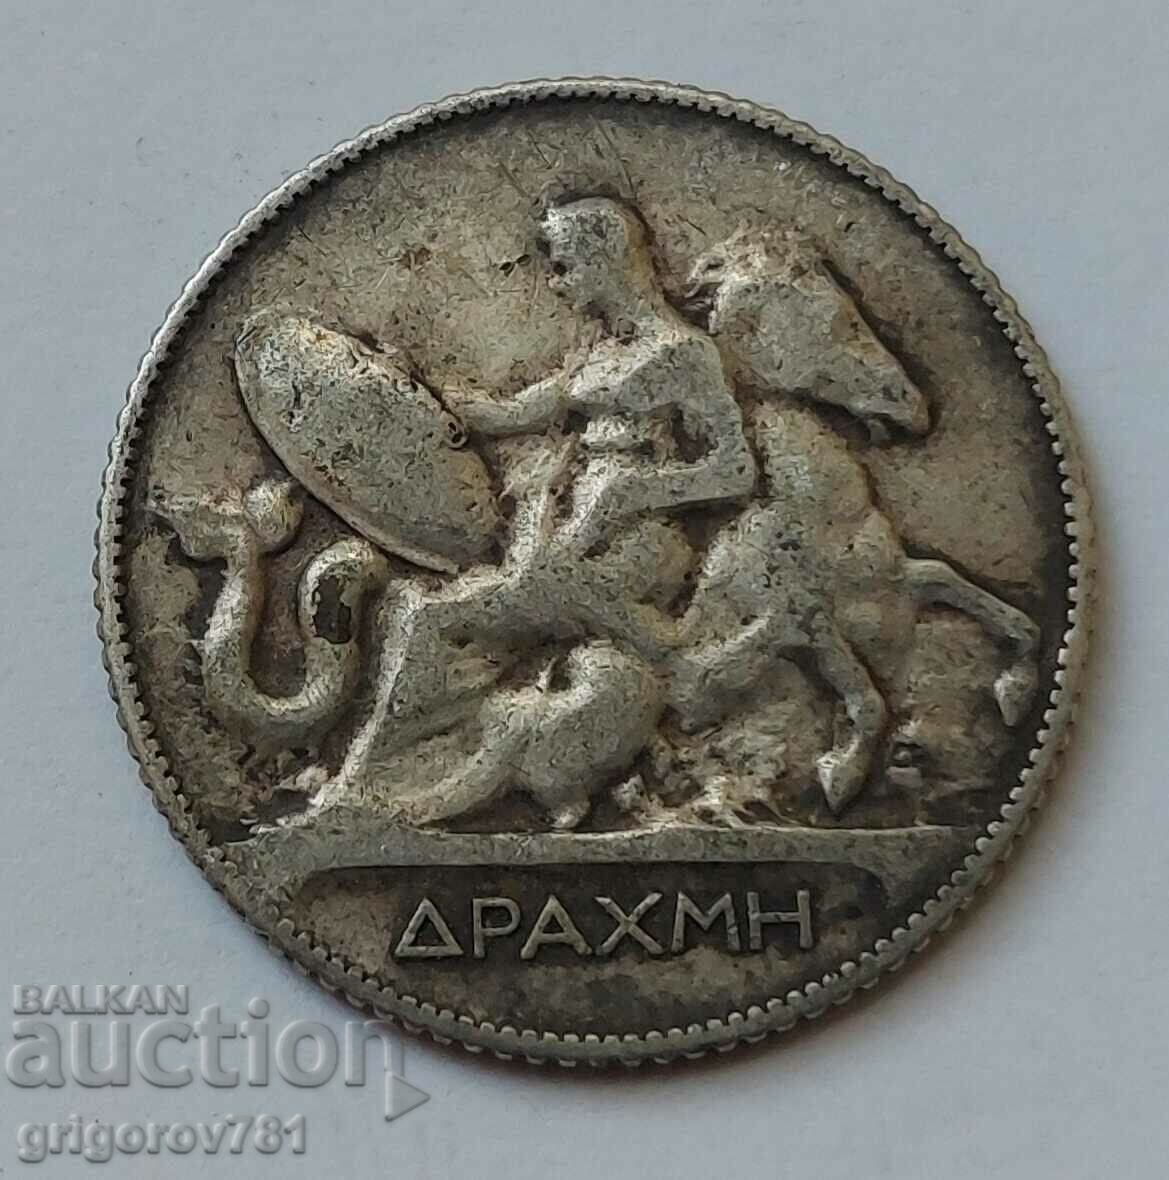 1 Drachma Silver Greece 1911 - Silver Coin #3